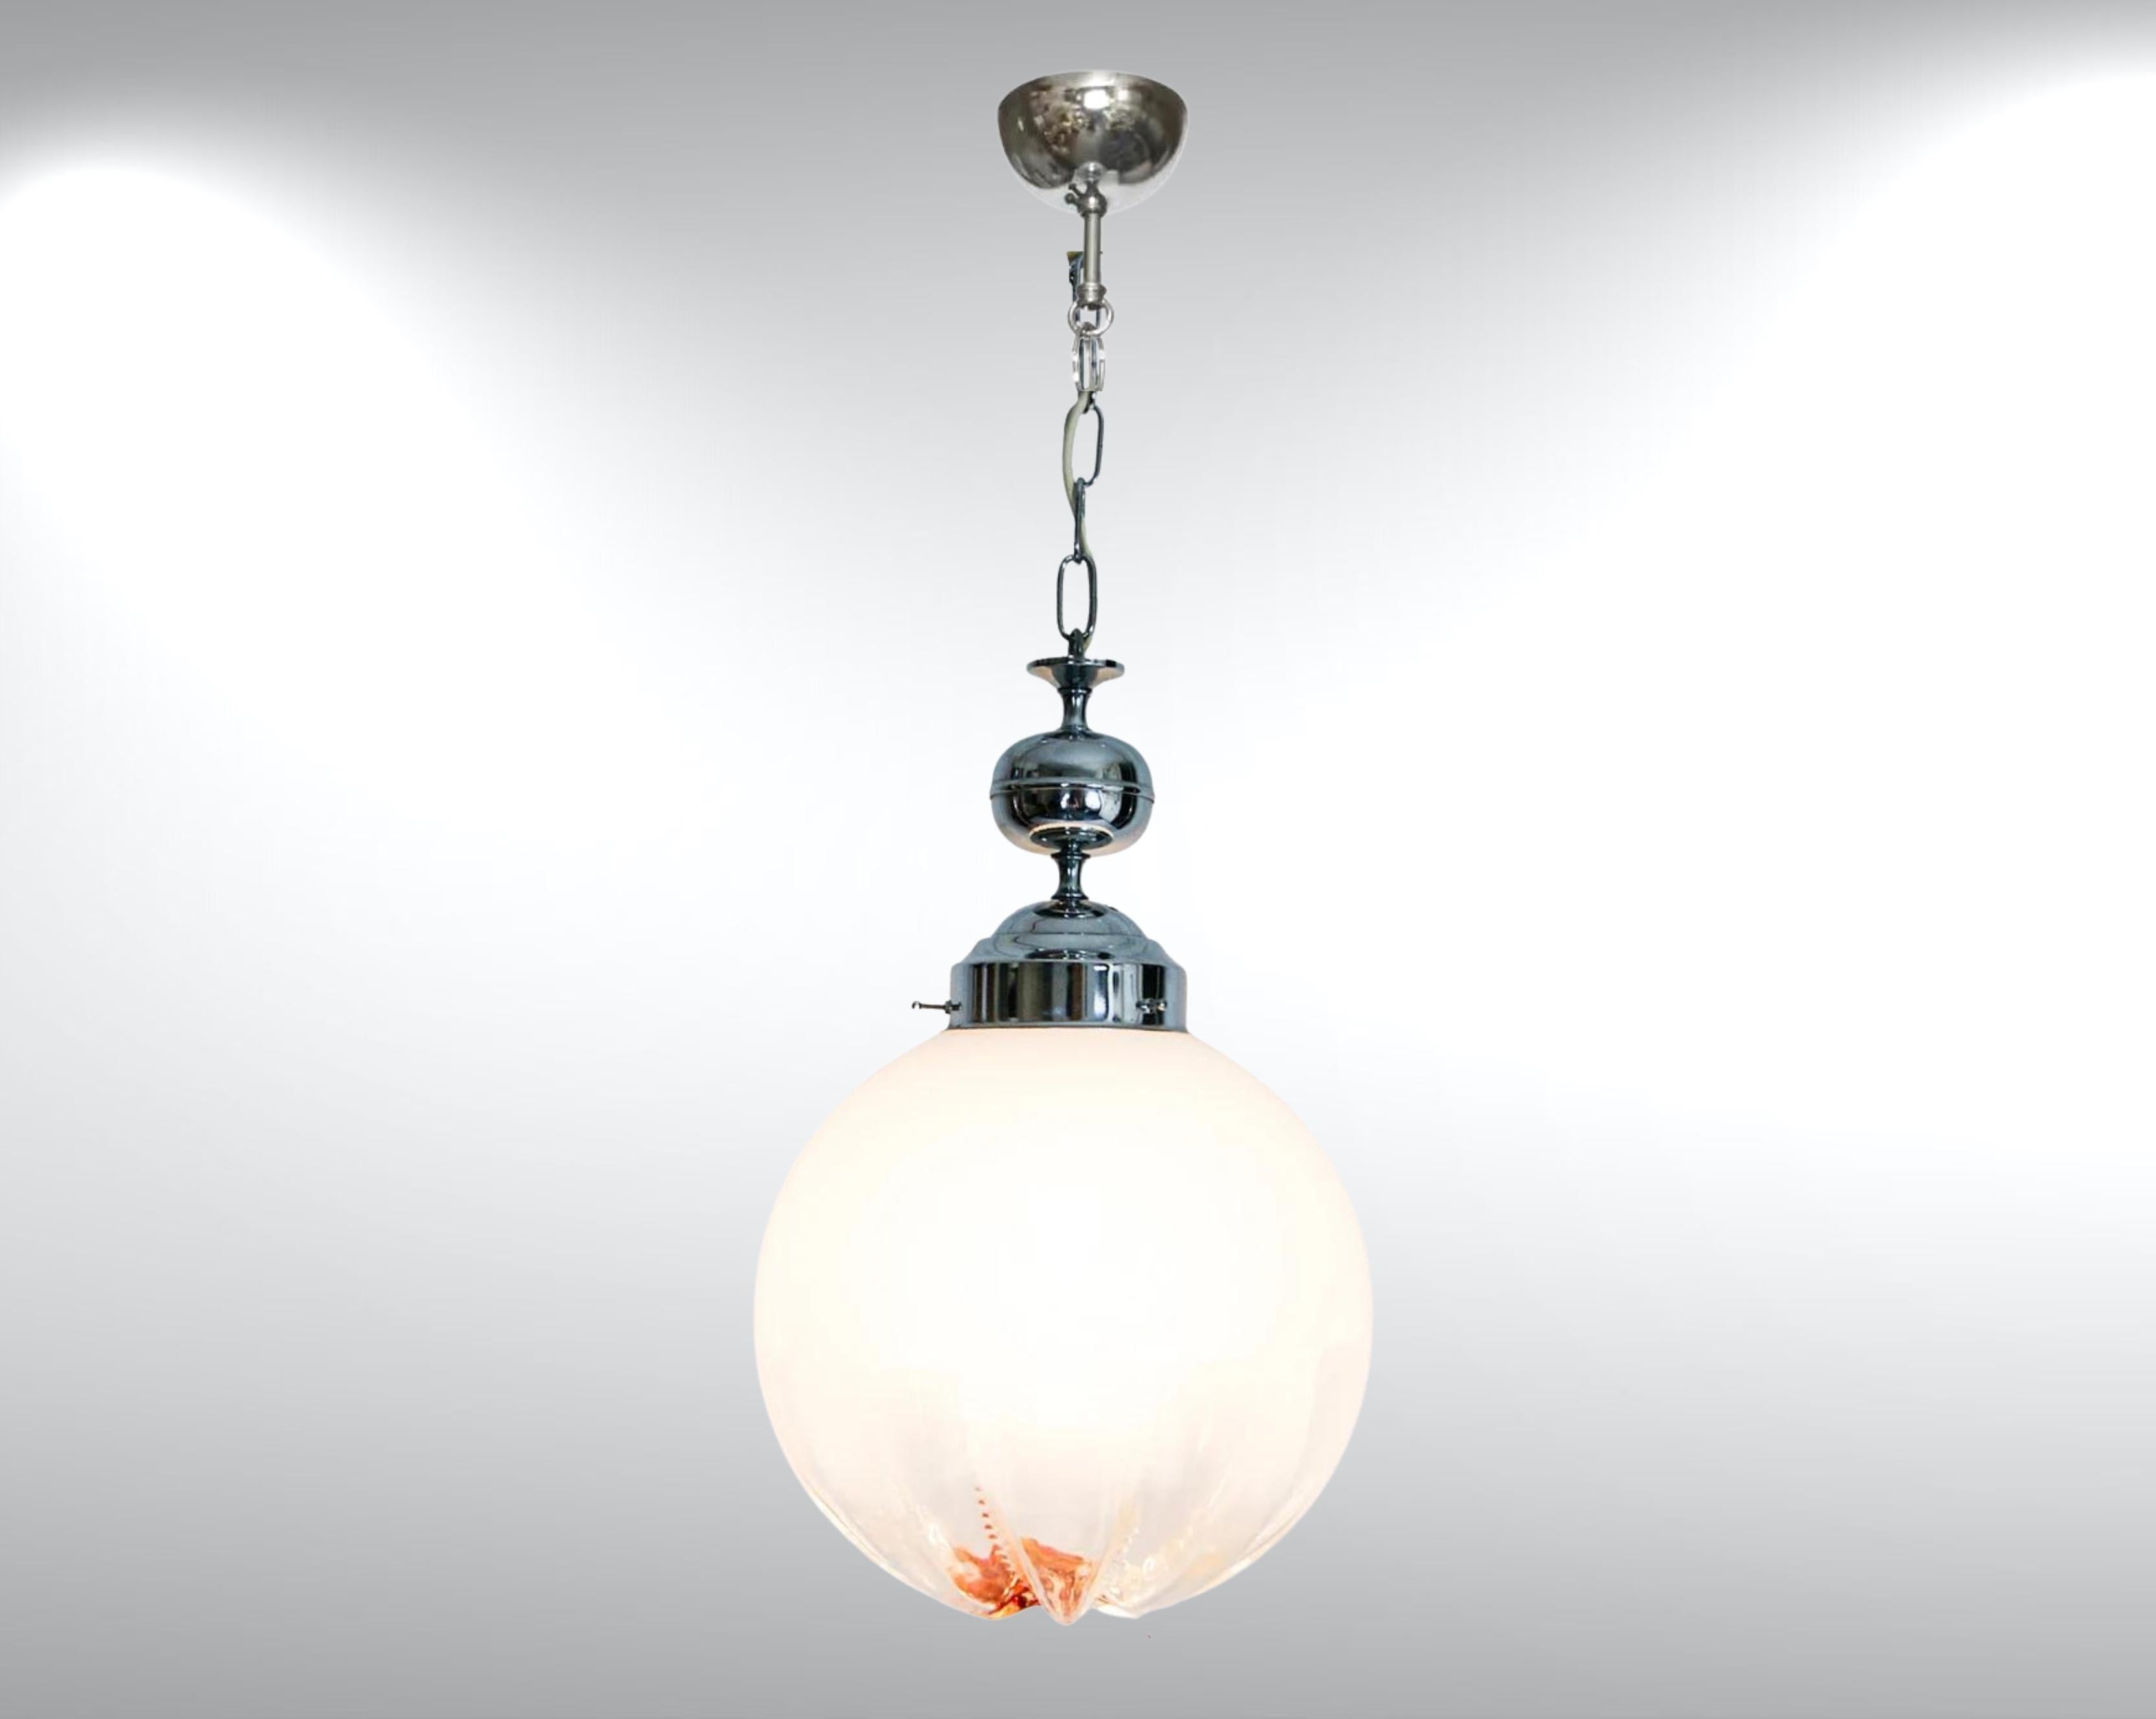 Lampe suspendue en verre de Murano par Mazzega, circa 1960s.
Attribué à Toni Zuccheri.
Diffuseur globe en verre sommerso de grande taille. 
La coloration va d'un dégradé de blanc laiteux à un verre clair vers la base, puis à un éclat intense d'ambre